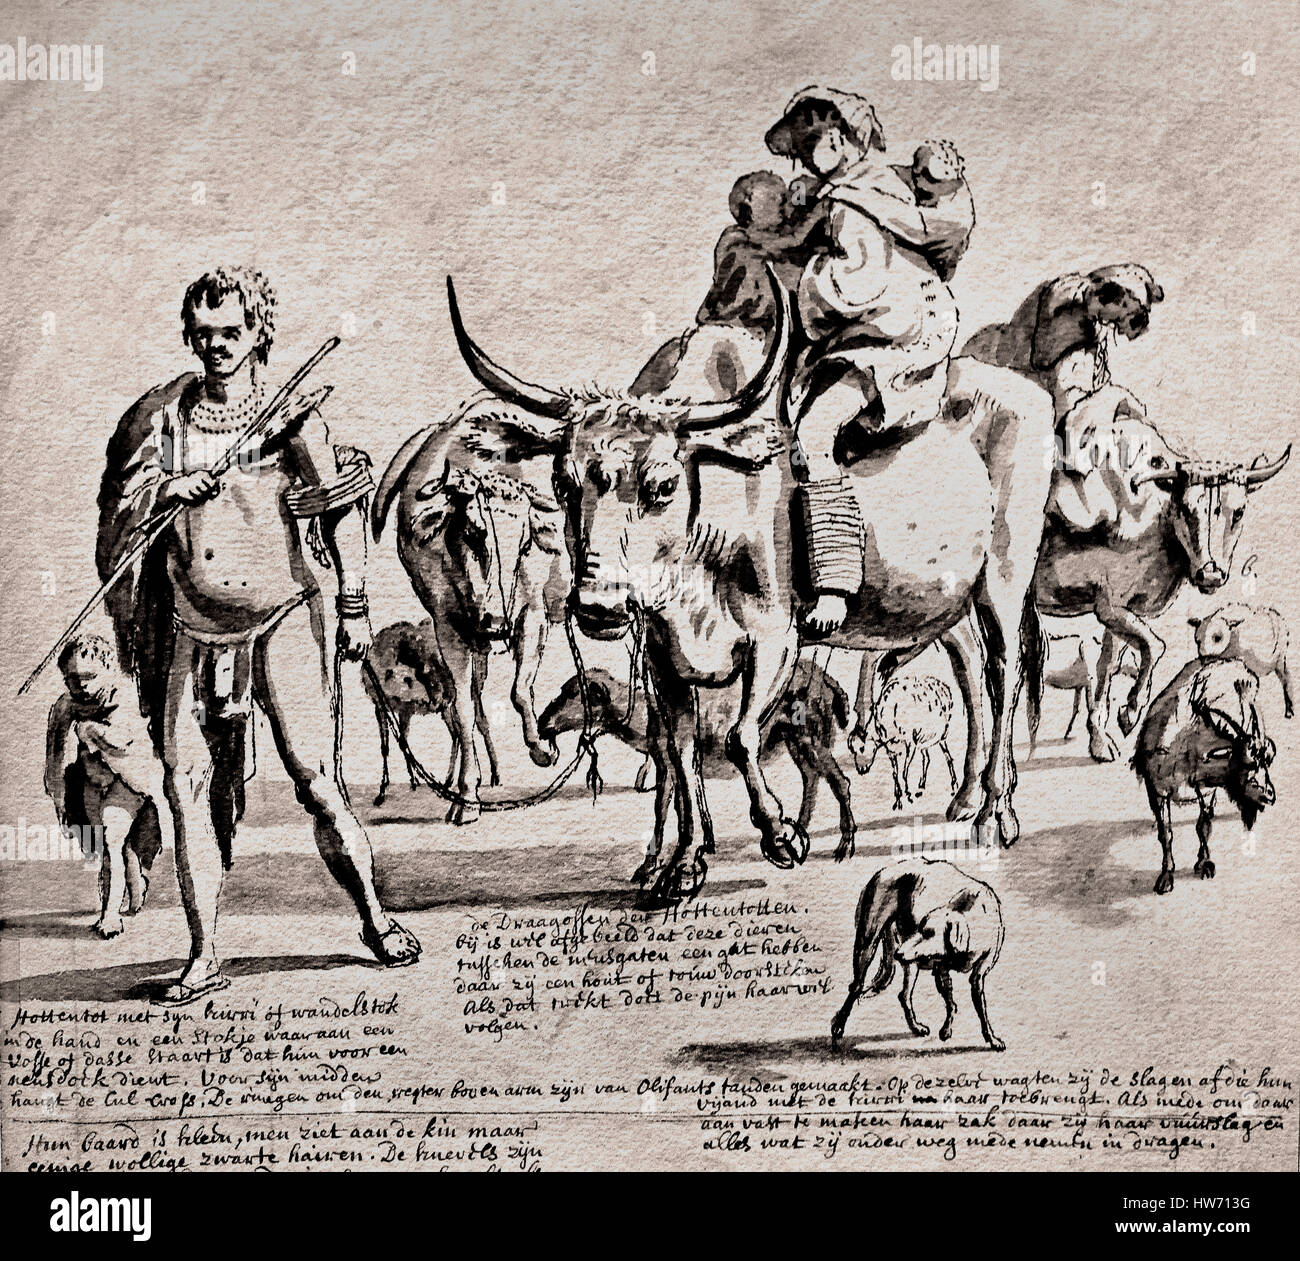 Khoekoe Menschen mit Tieren 1700. Südafrika - Transvaal - African Stockfoto